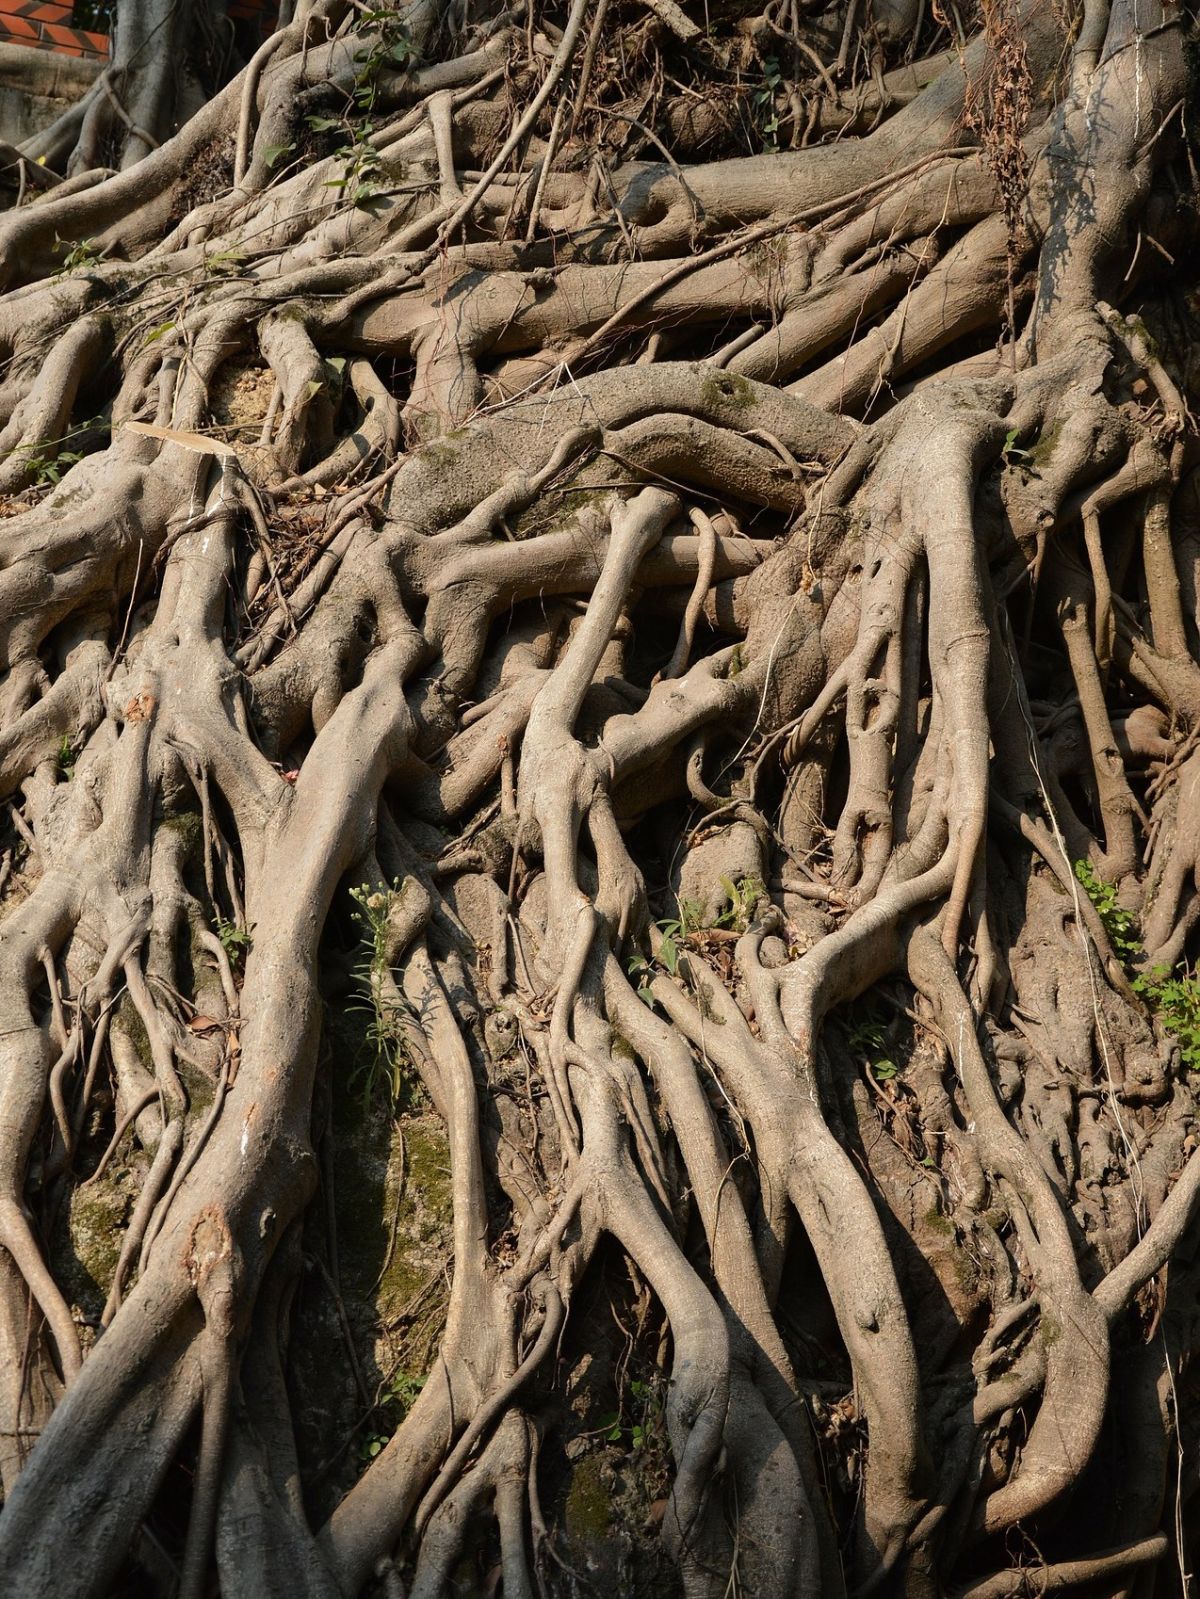 Die meisten Wurzeln des Feigenbaums sollen lediglich den Stamm auf harten Untergrund stabilisieren. Doch eine Wurzel wächst senkrecht in den Boden, um Grundwasser in großer Tiefe anzuzapfen.
